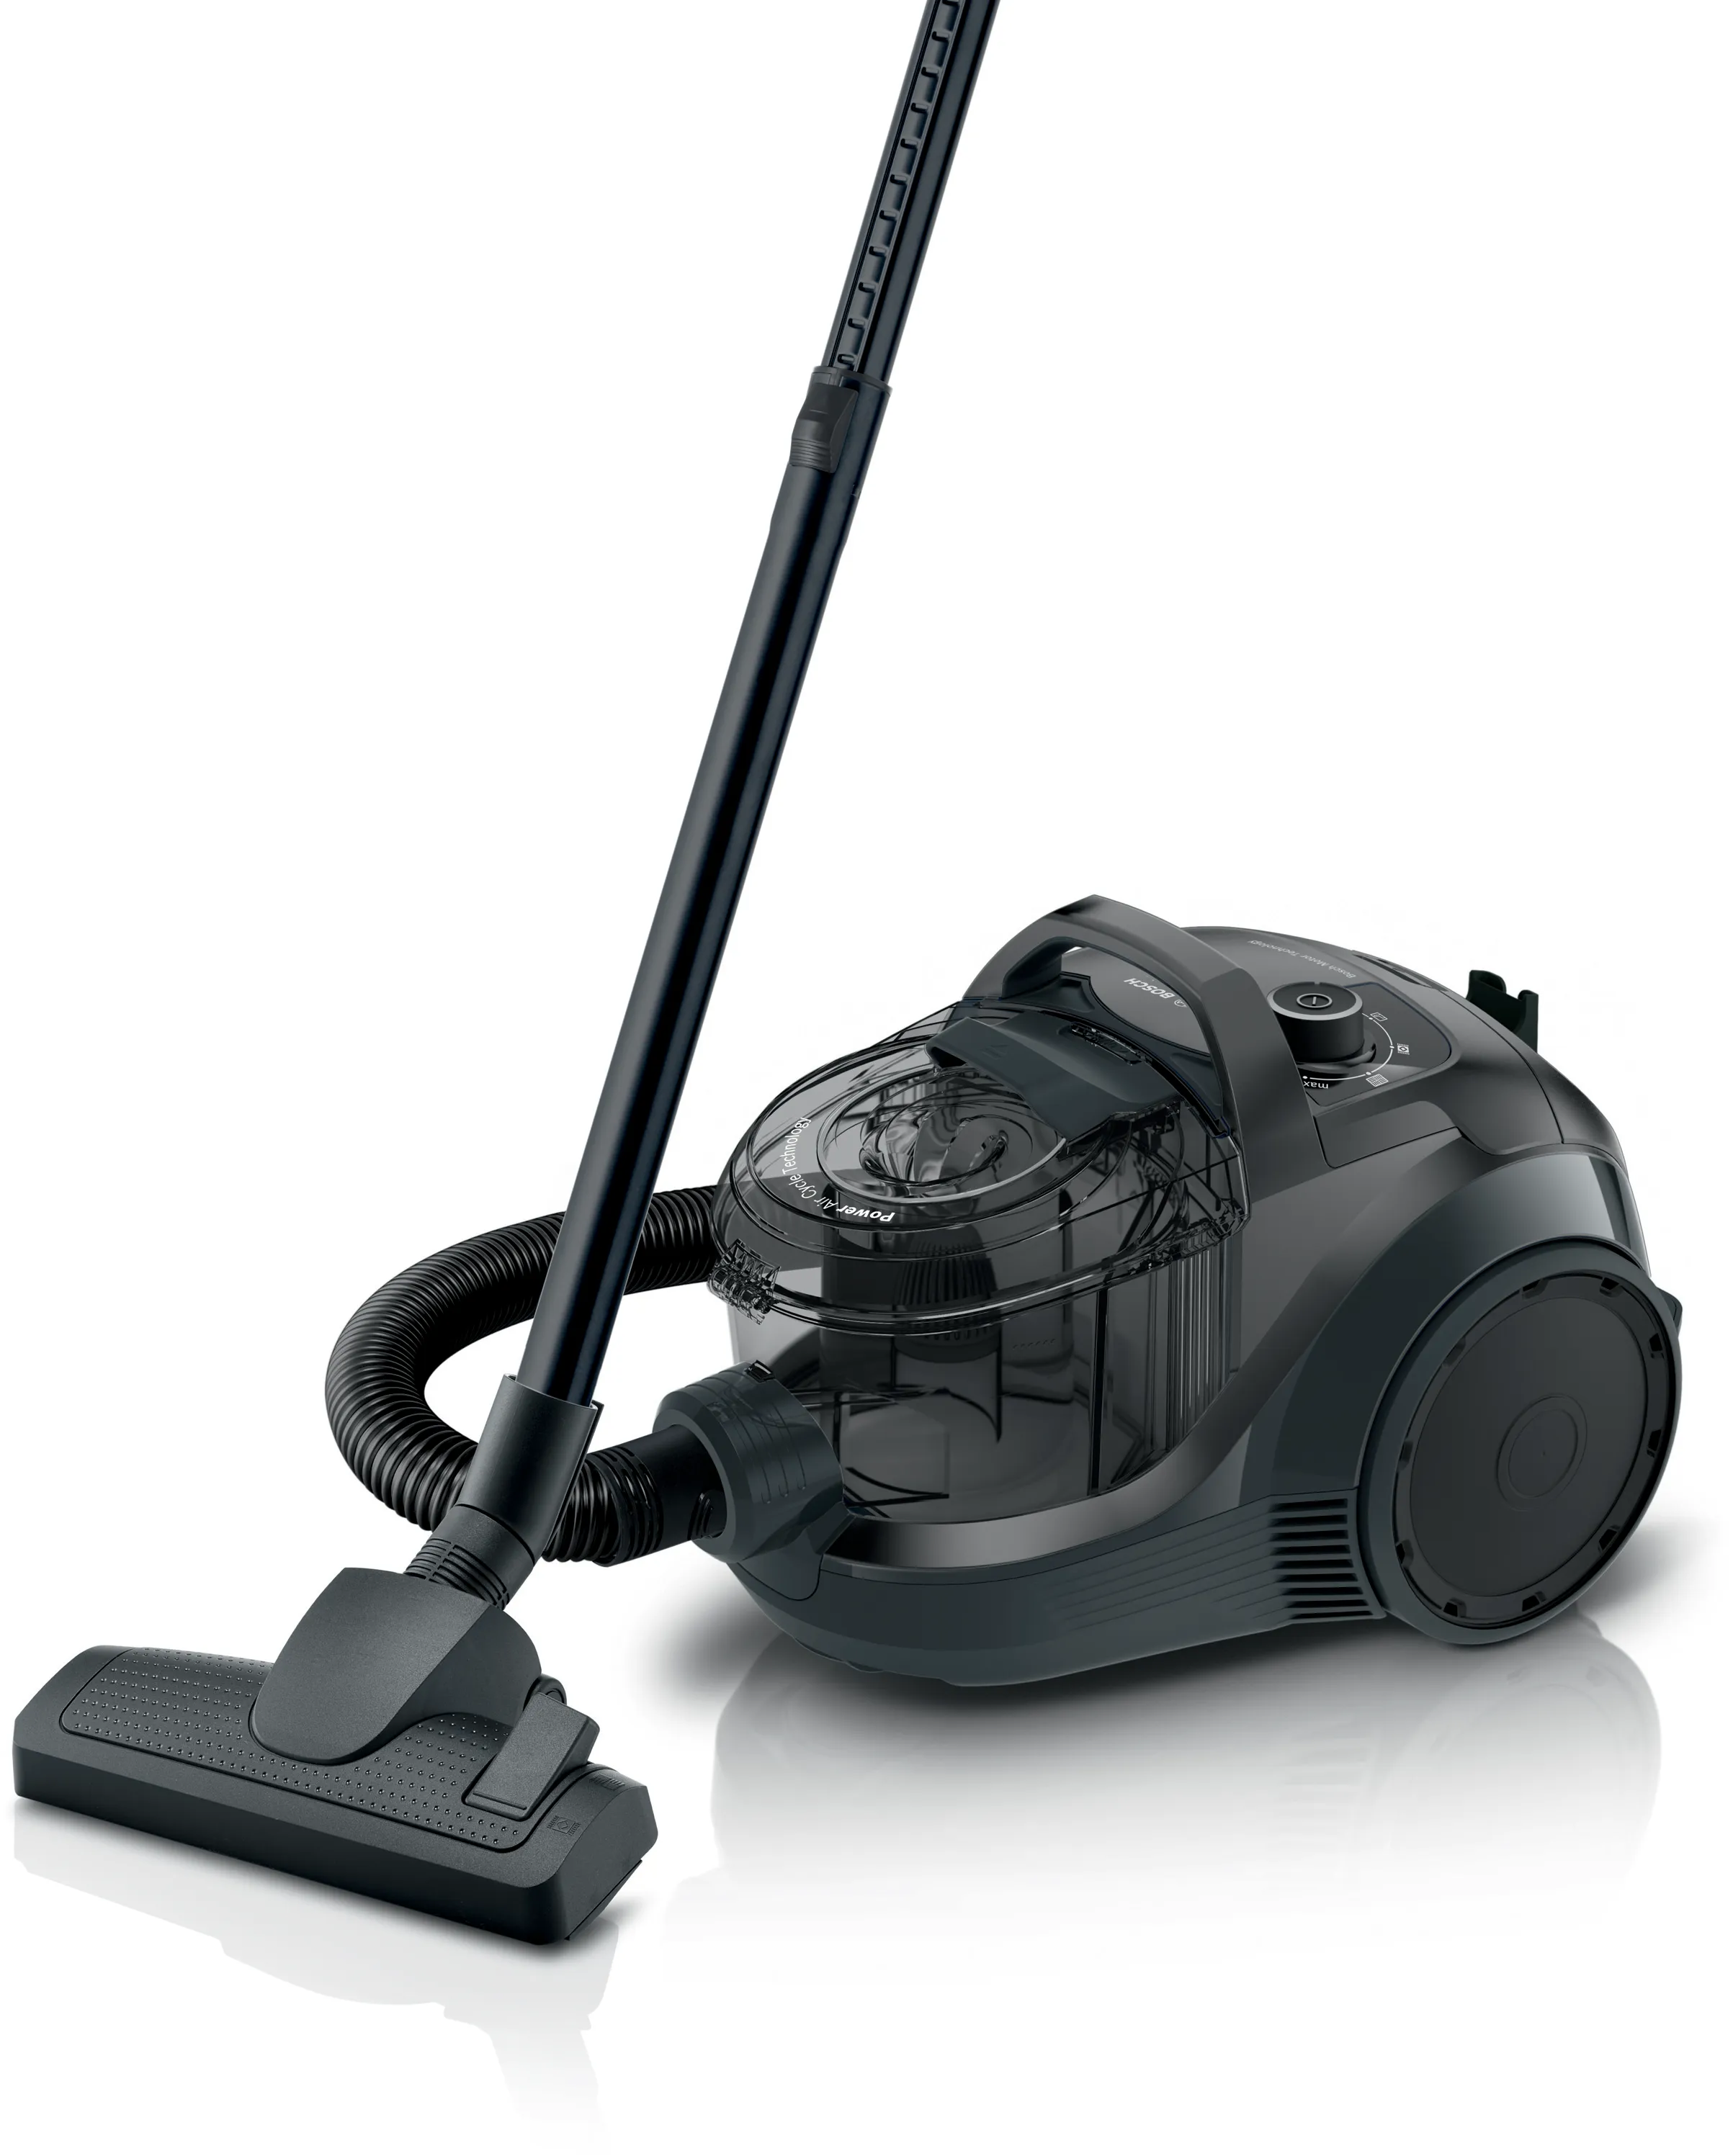 Series 4 Bagless vacuum cleaner Black 